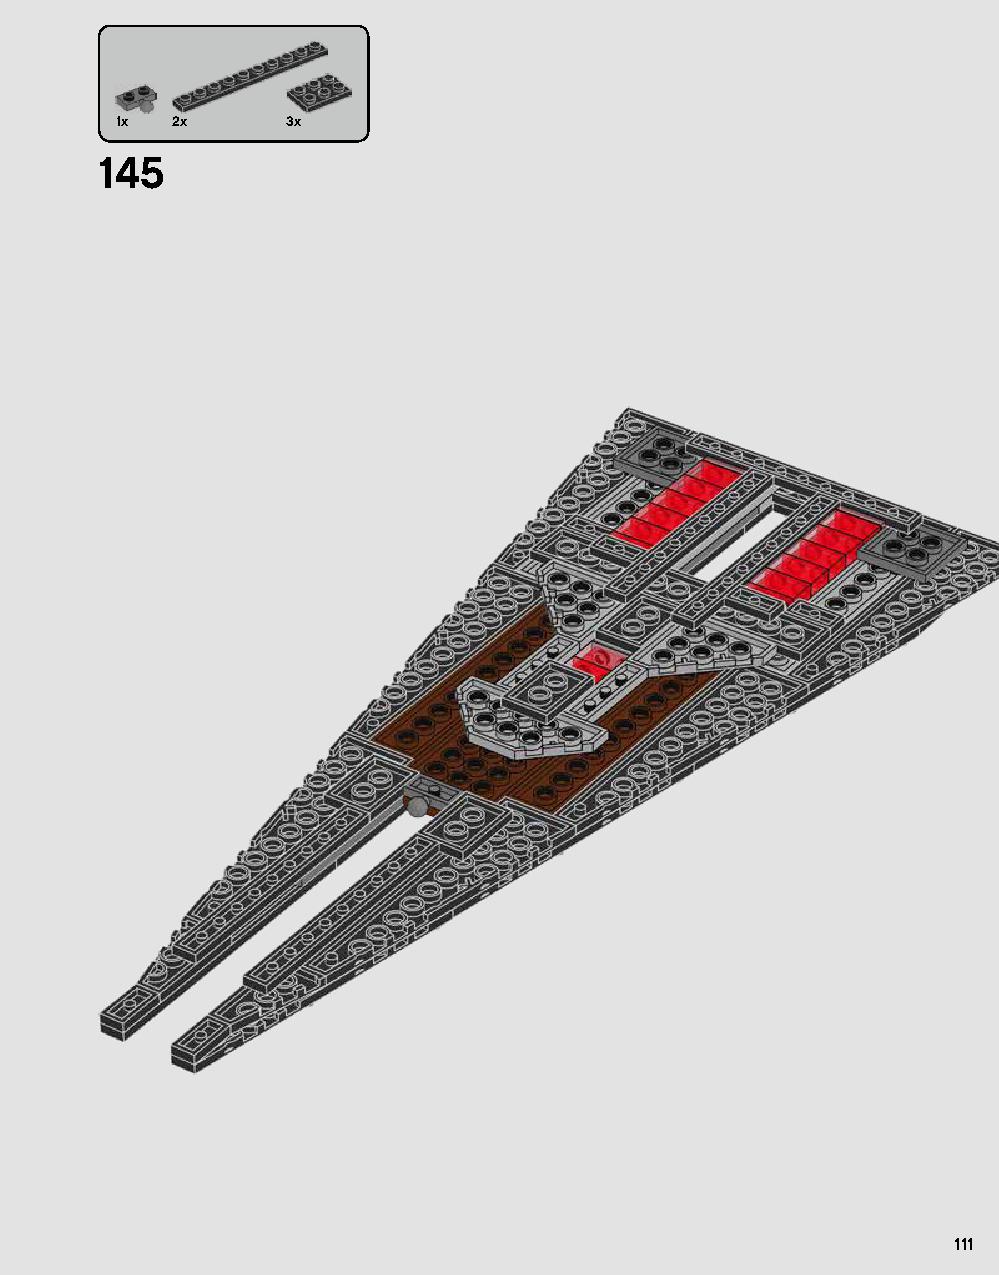 ダース・ベイダーの城 75251 レゴの商品情報 レゴの説明書・組立方法 111 page